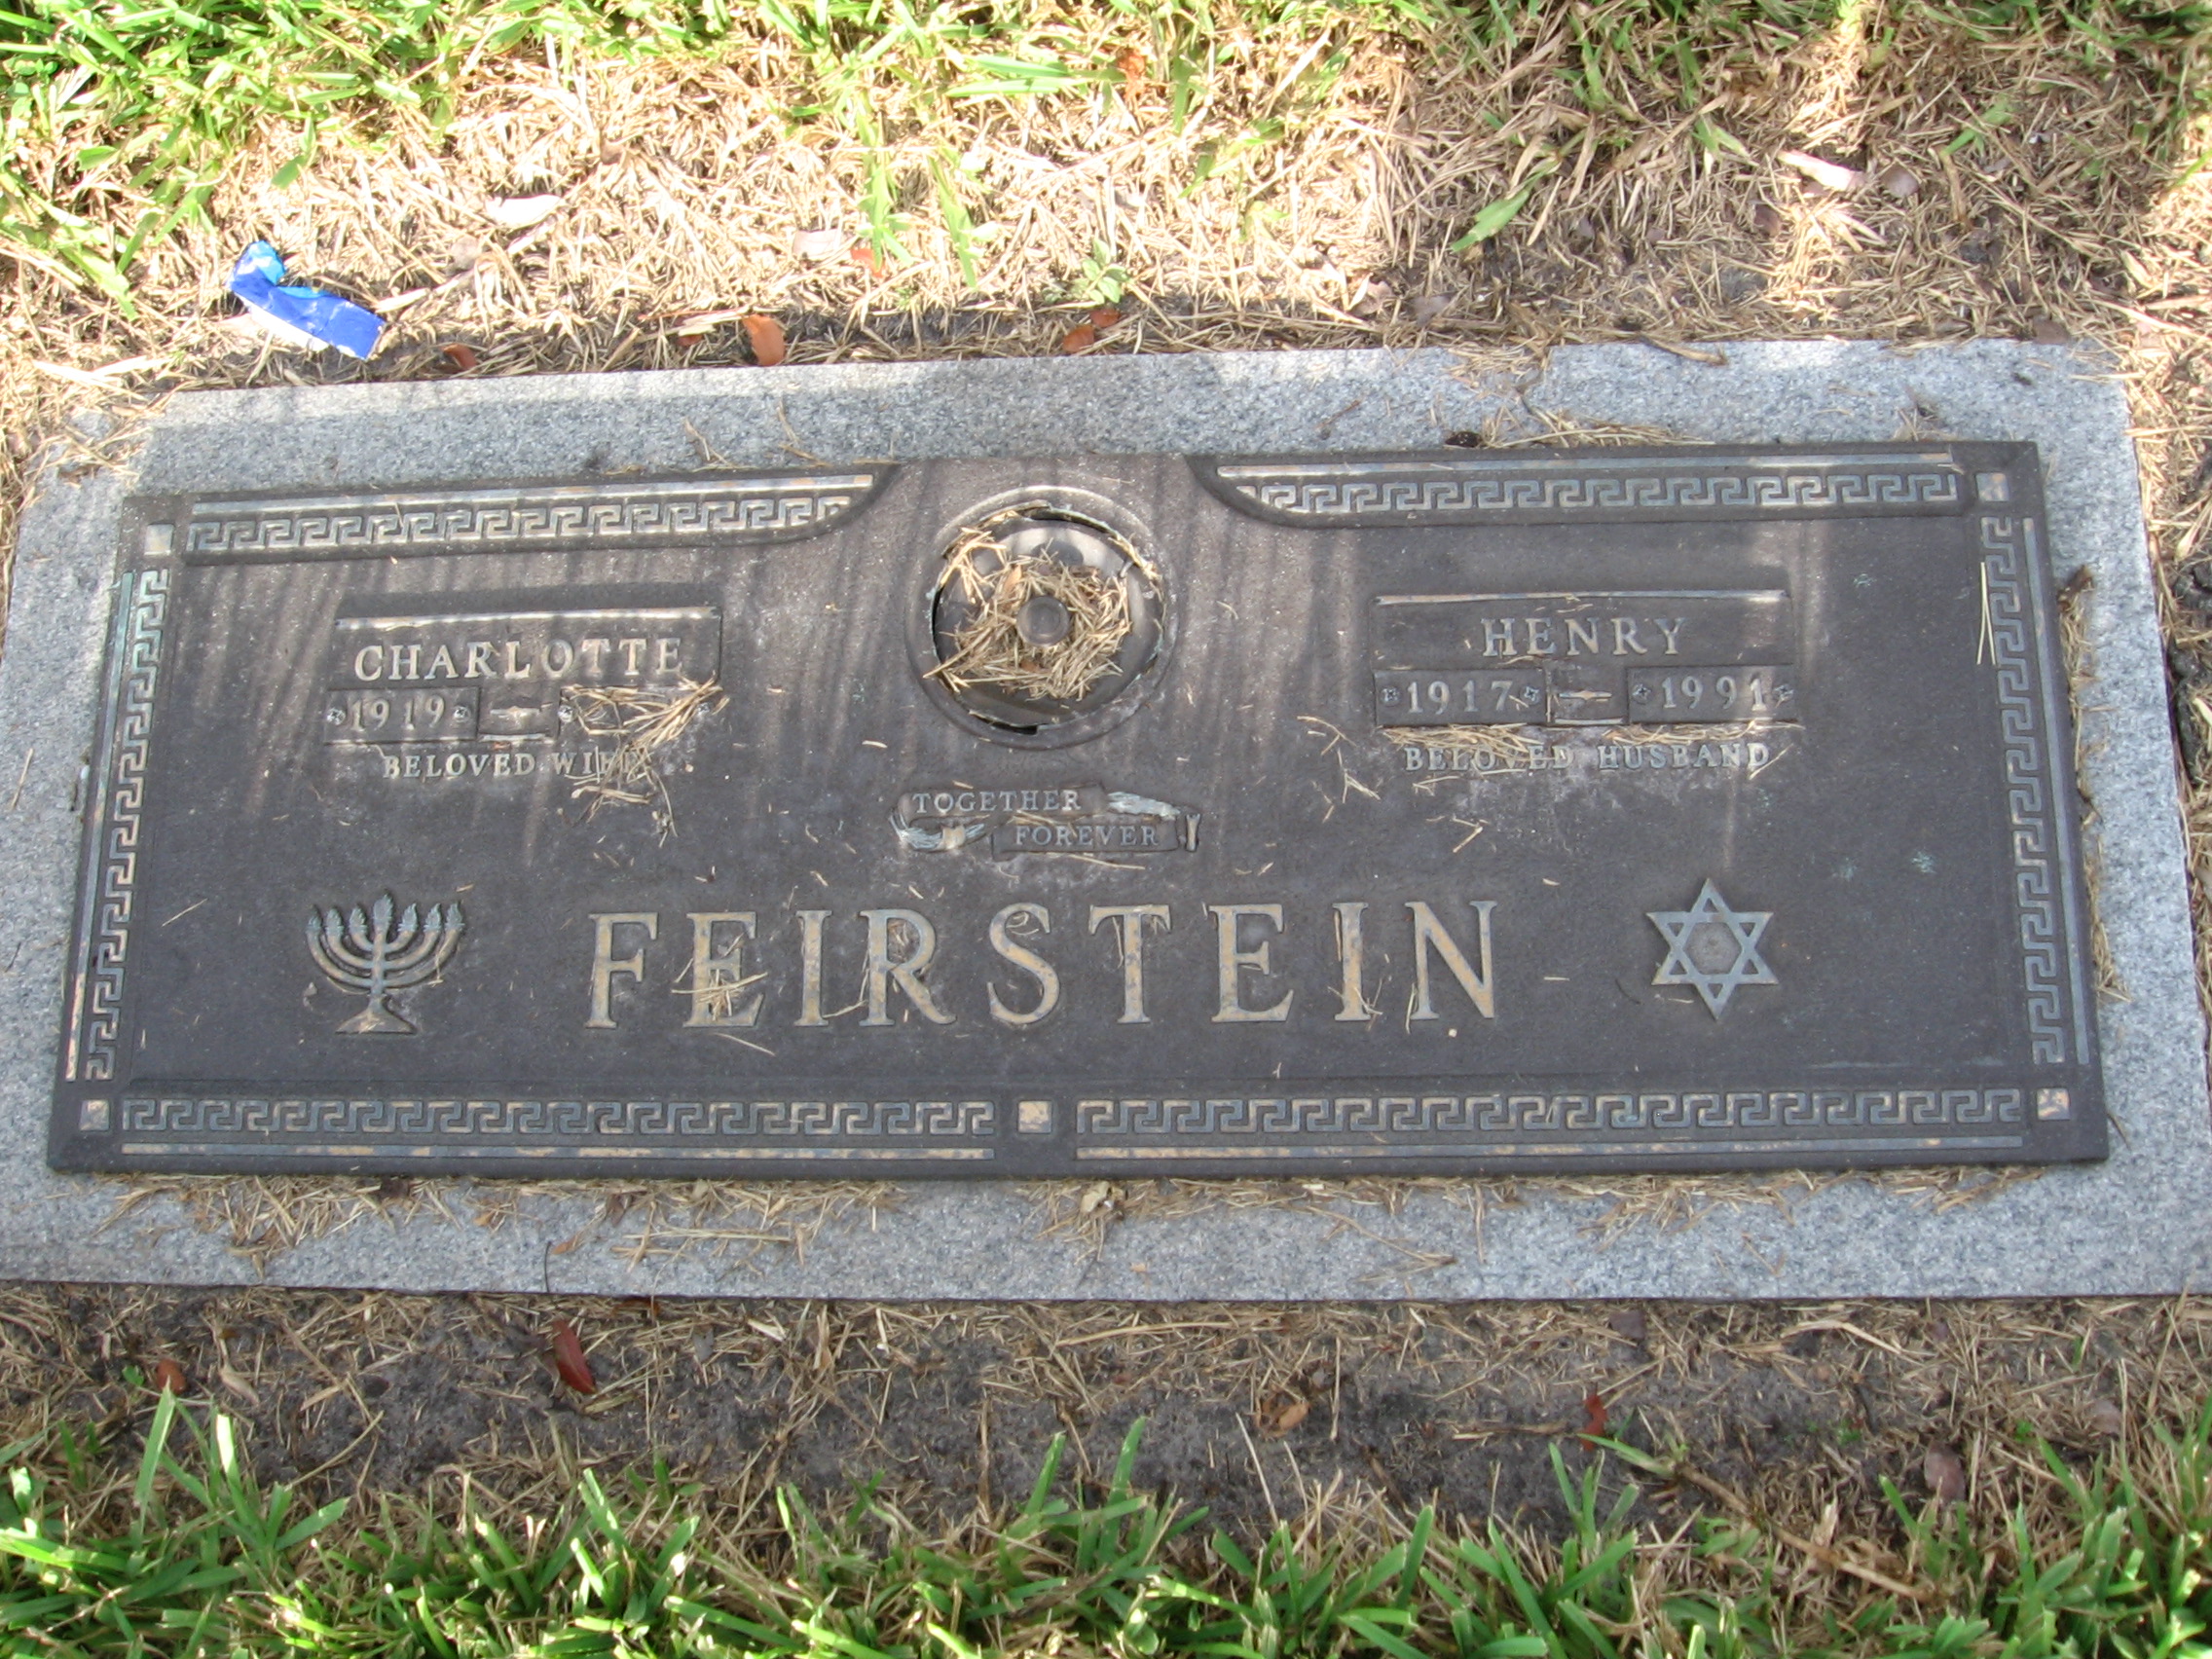 Henry Feirstein